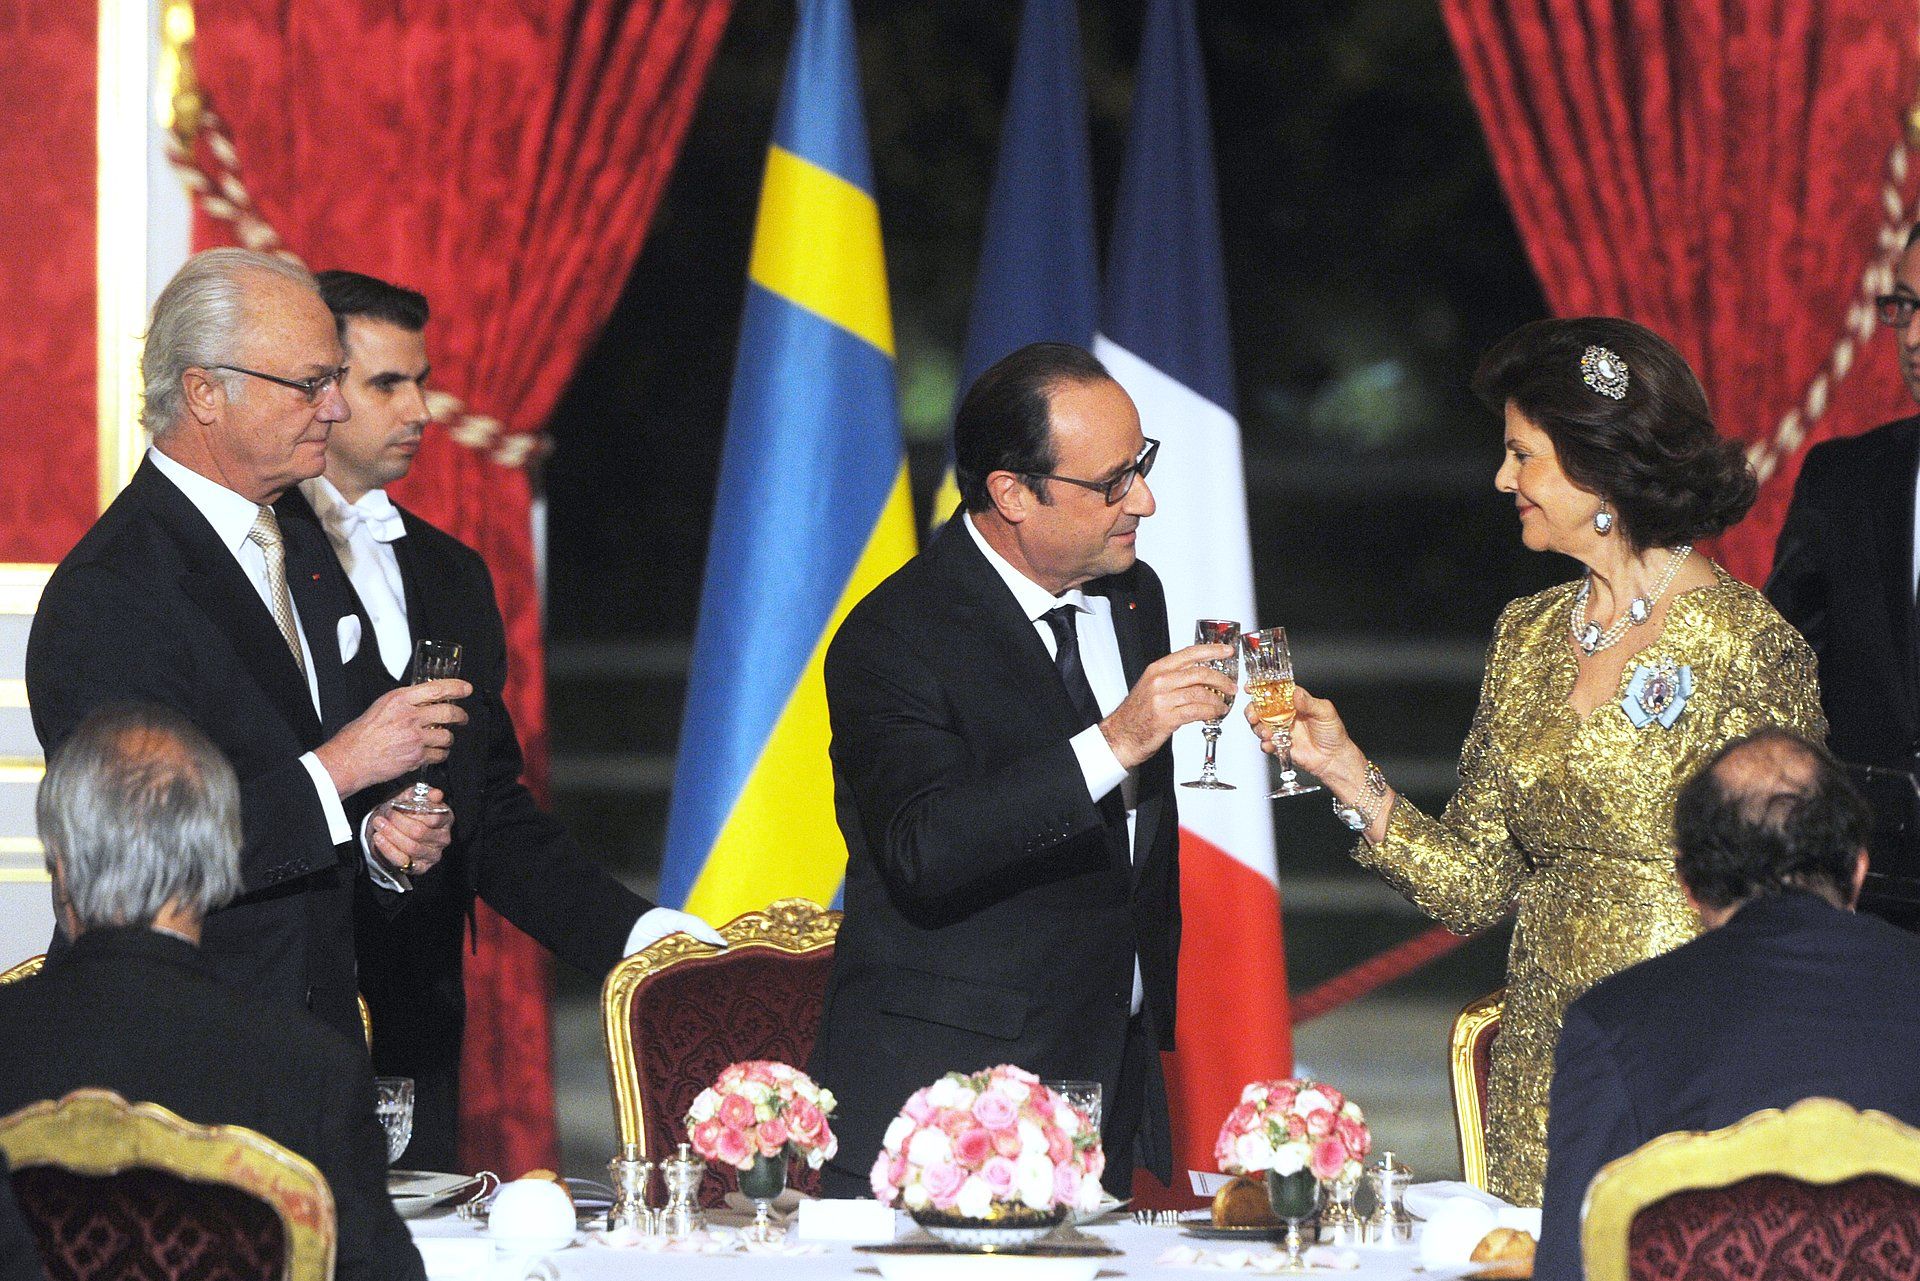 2014: Franse president Francois Hollande toost met koningin Silvia en koning Carl XVI Gustaf tijdens een staatsdiner in het Elysee-paleis in Parijs.